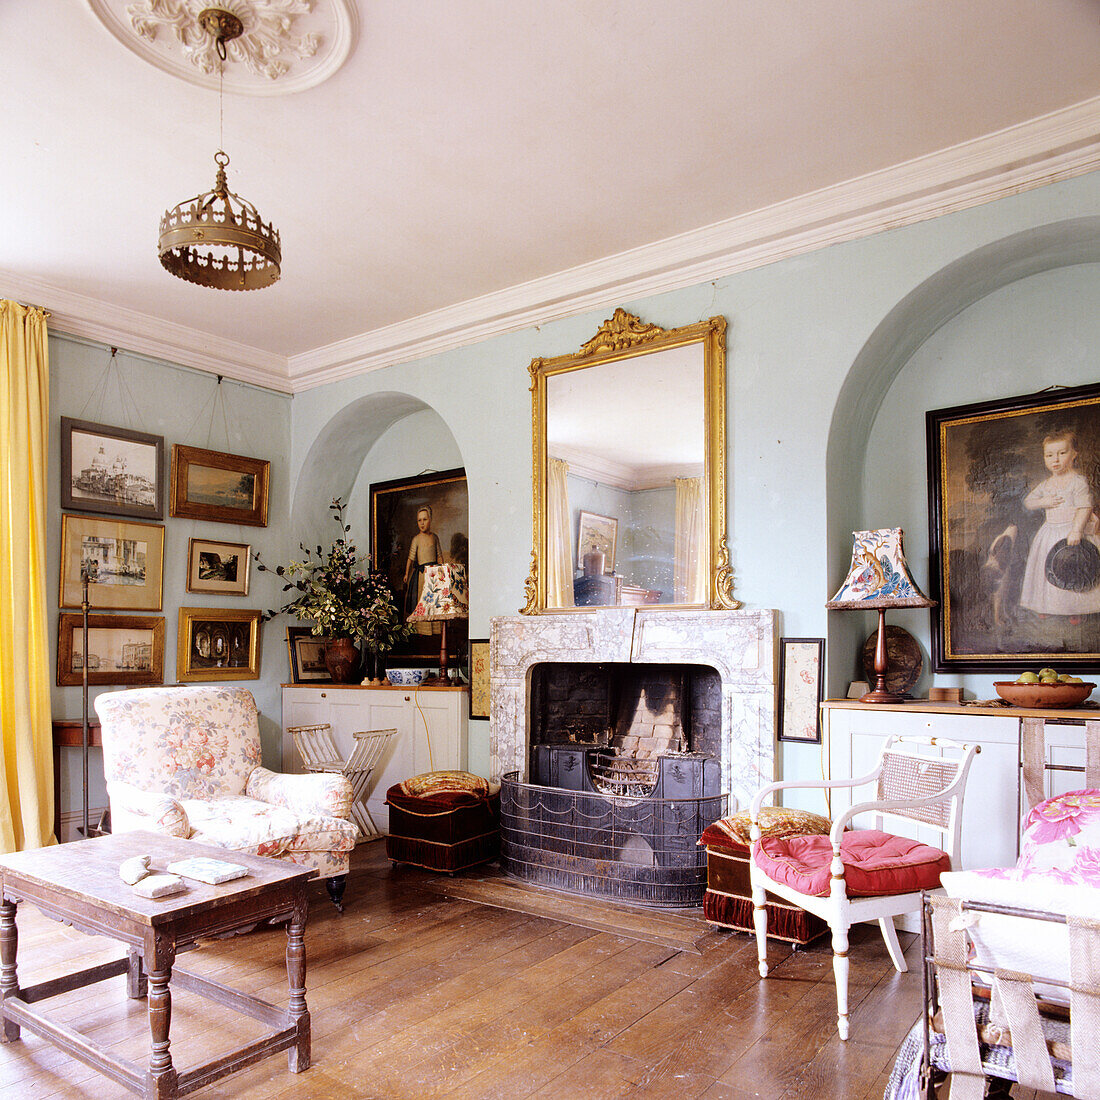 Historisches Wohnzimmer mit Kamin, goldgerahmtem Spiegel und Bildergalerie